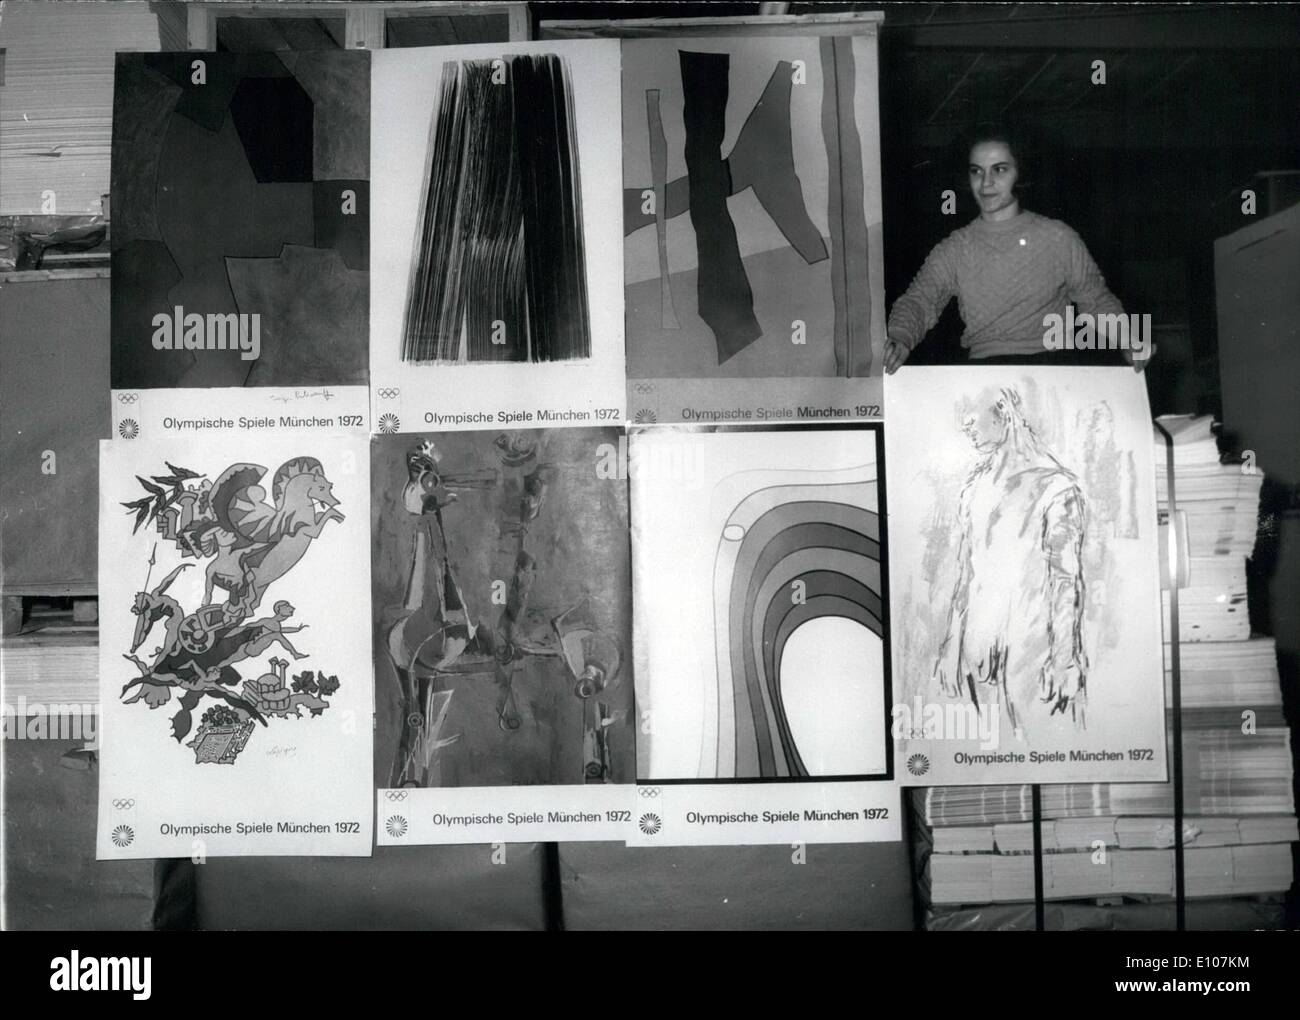 02 février 1970 - Les Jeux Olympiques d'affiches : juste à gauche la machine d'impression. Photo montre la série de sept affiches créées par Charles Banque D'Images